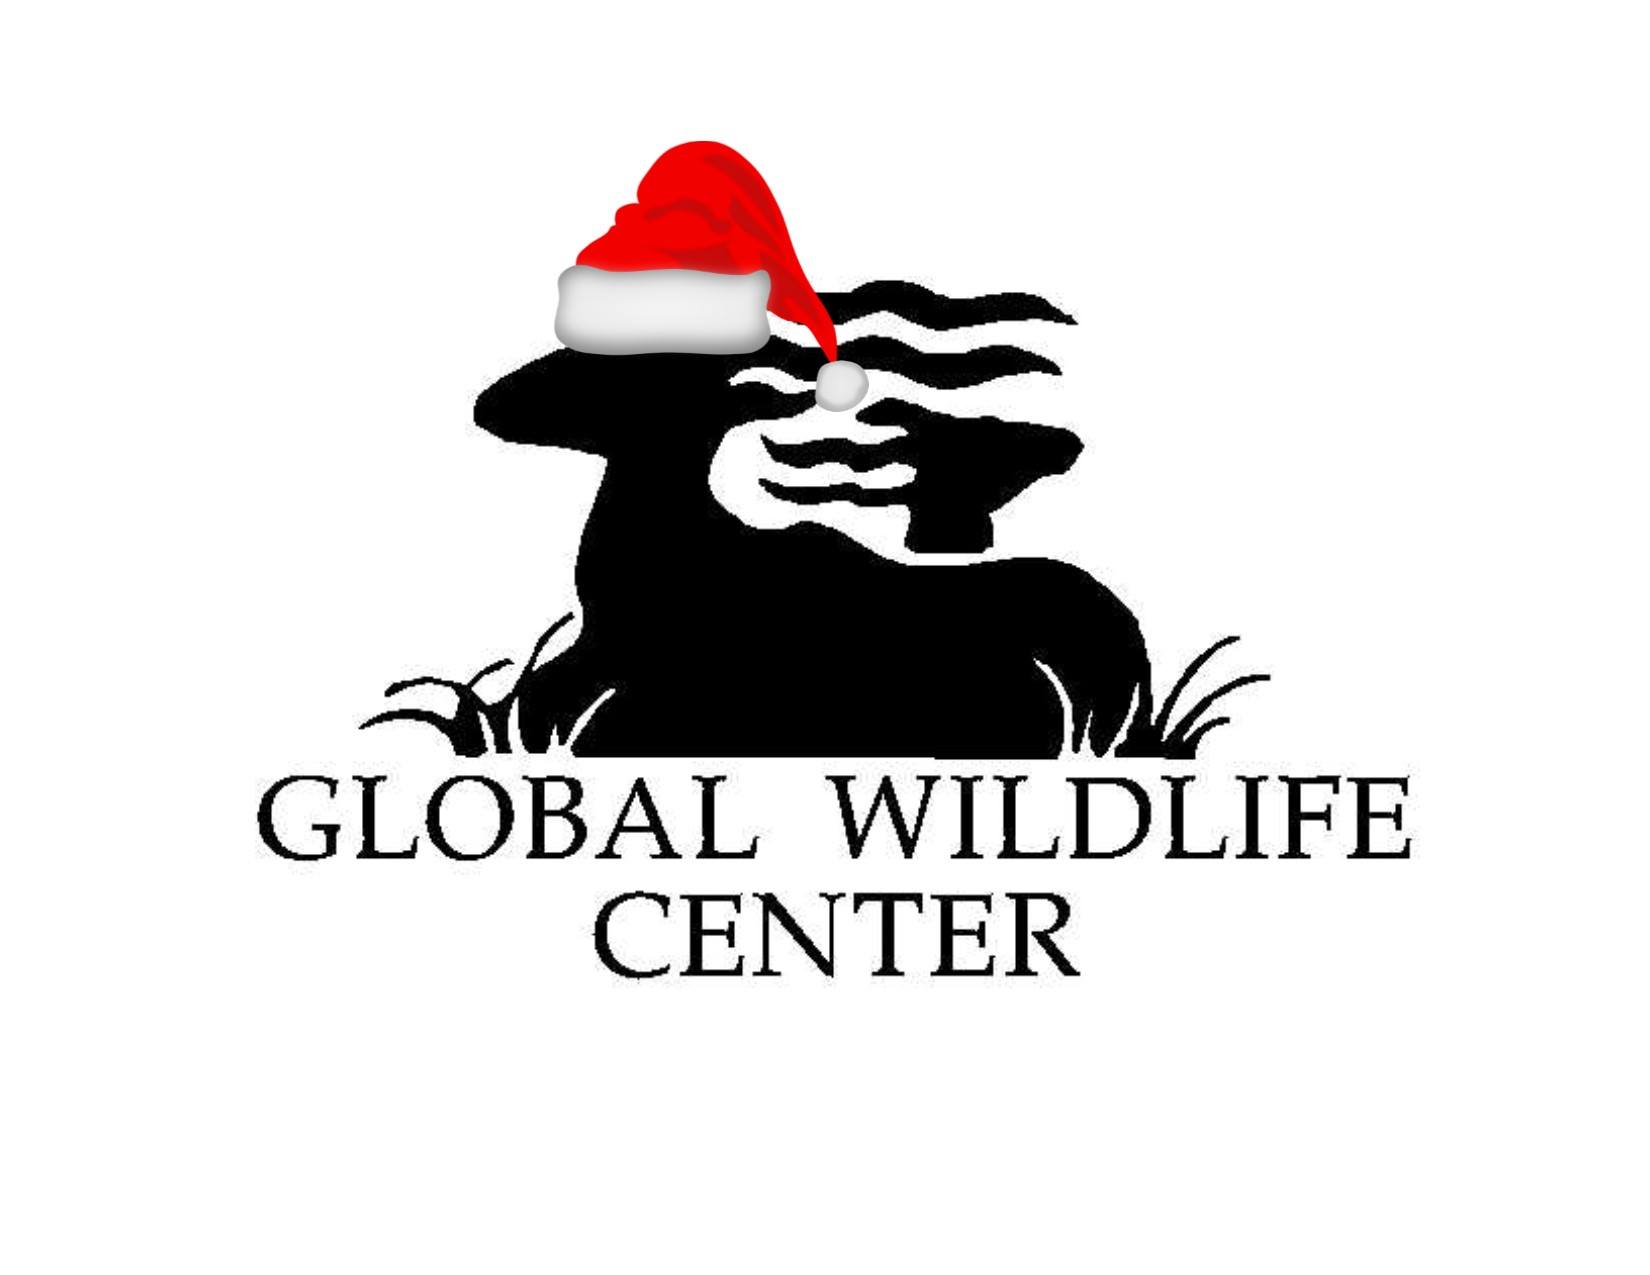 Global Wildlife Center|Park|Travel